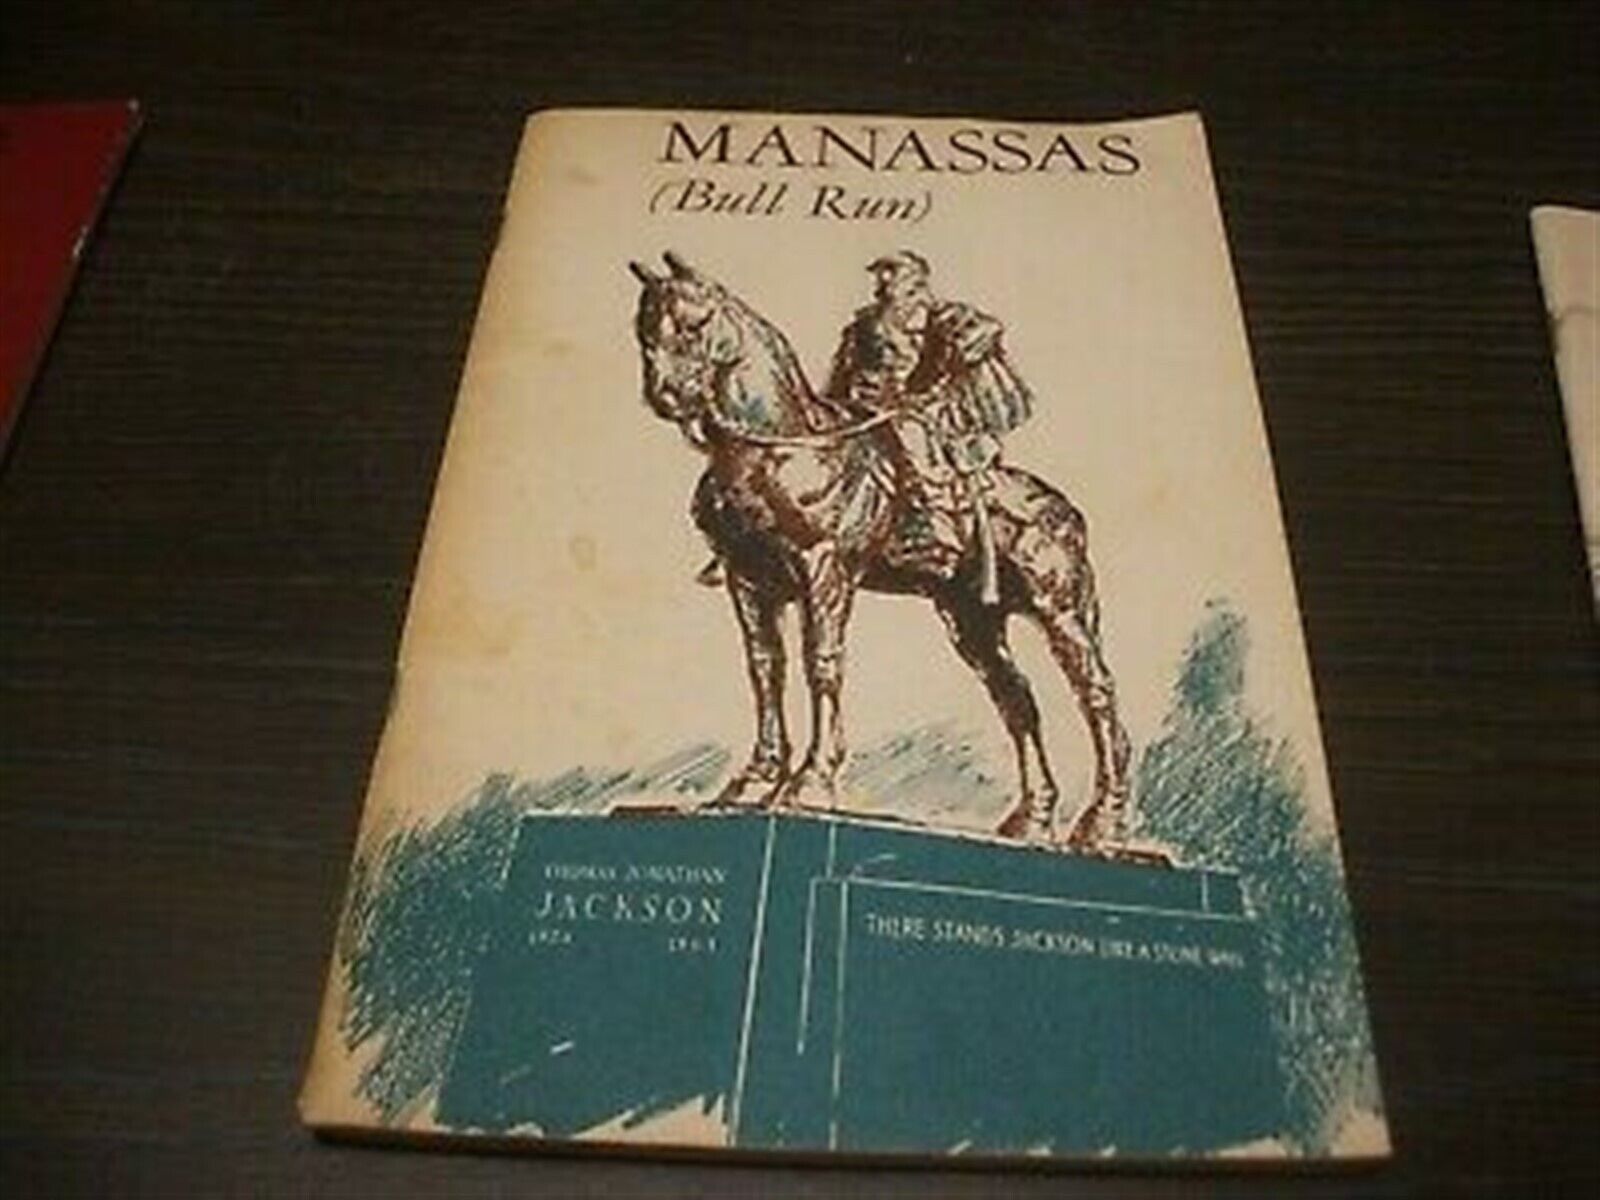 MANASSAS (BULL RUN) By Francis F Wilshin - 1961 Reprint